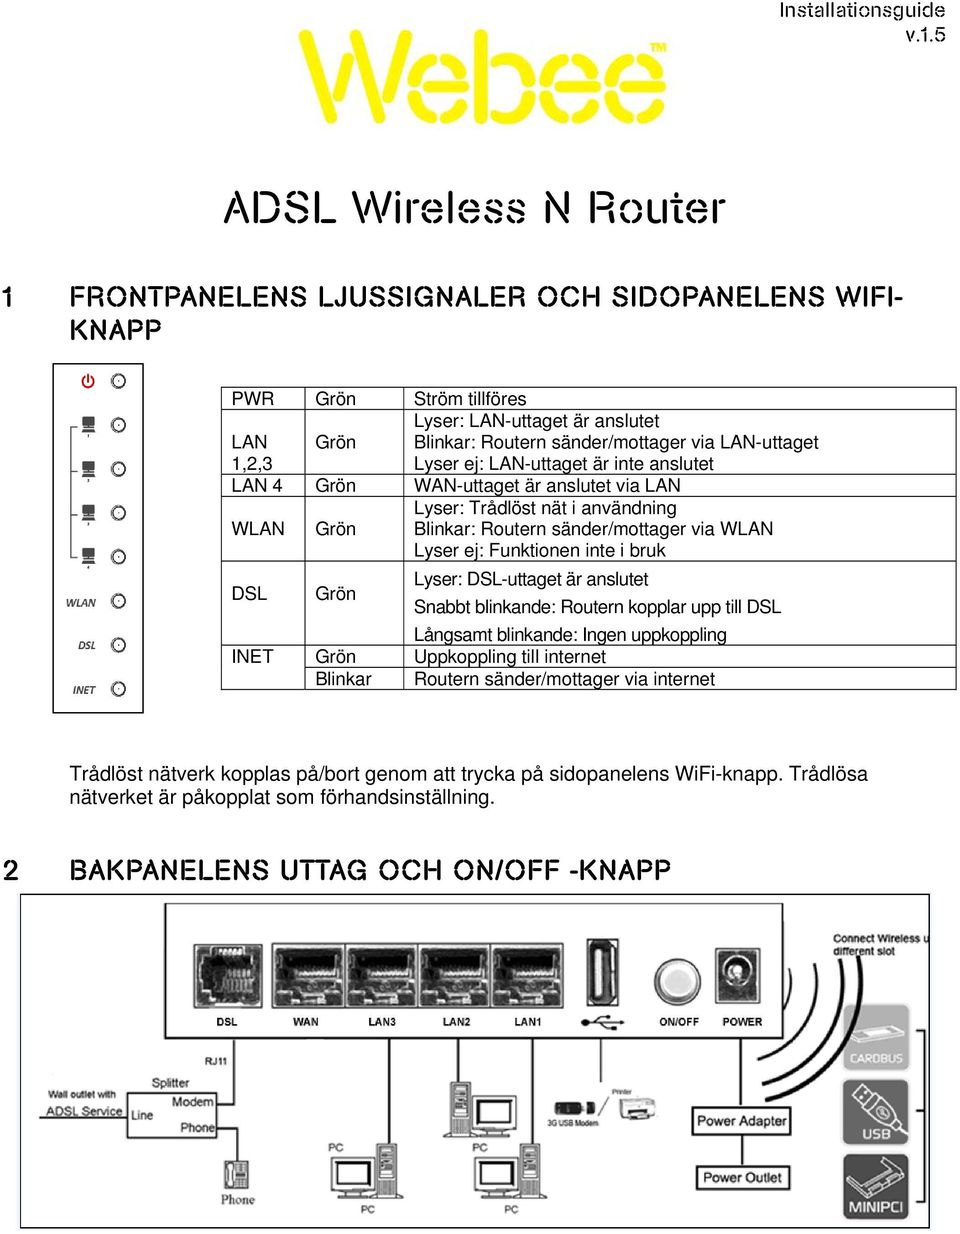 LAN-uttaget Lyser ej: LAN-uttaget är inte anslutet LAN 4 Grön WAN-uttaget är anslutet via LAN WLAN Grön Lyser: Trådlöst nät i användning Blinkar: Routern sänder/mottager via WLAN Lyser ej: Funktionen